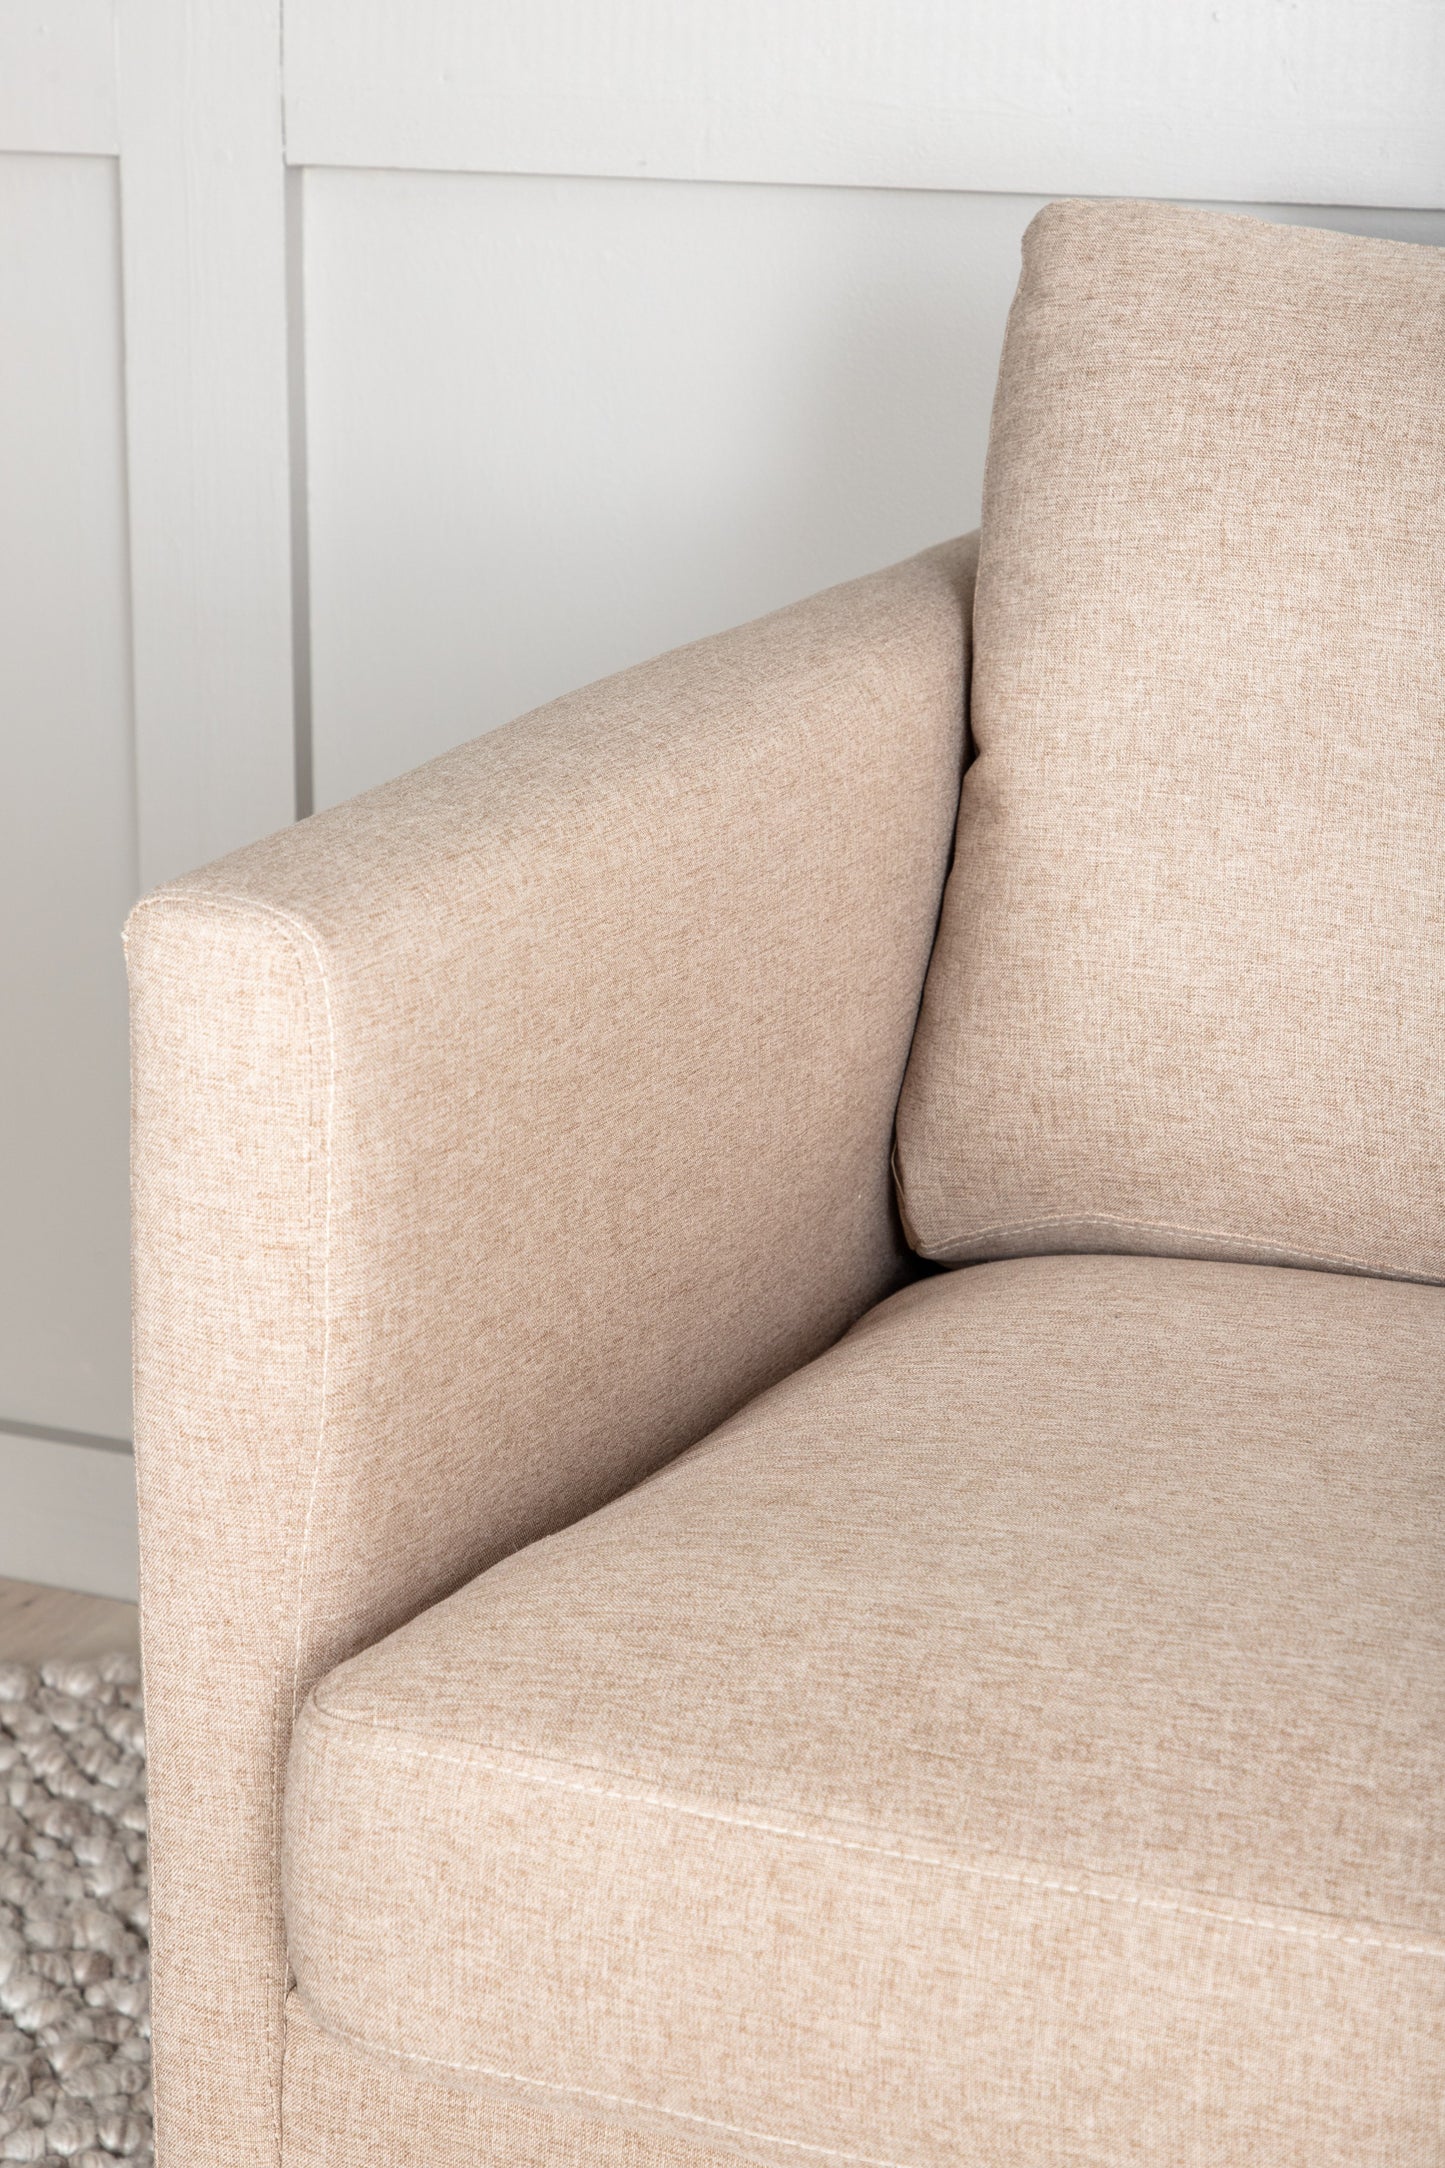 Zoom 2 personers sofa - Sort / beige stof